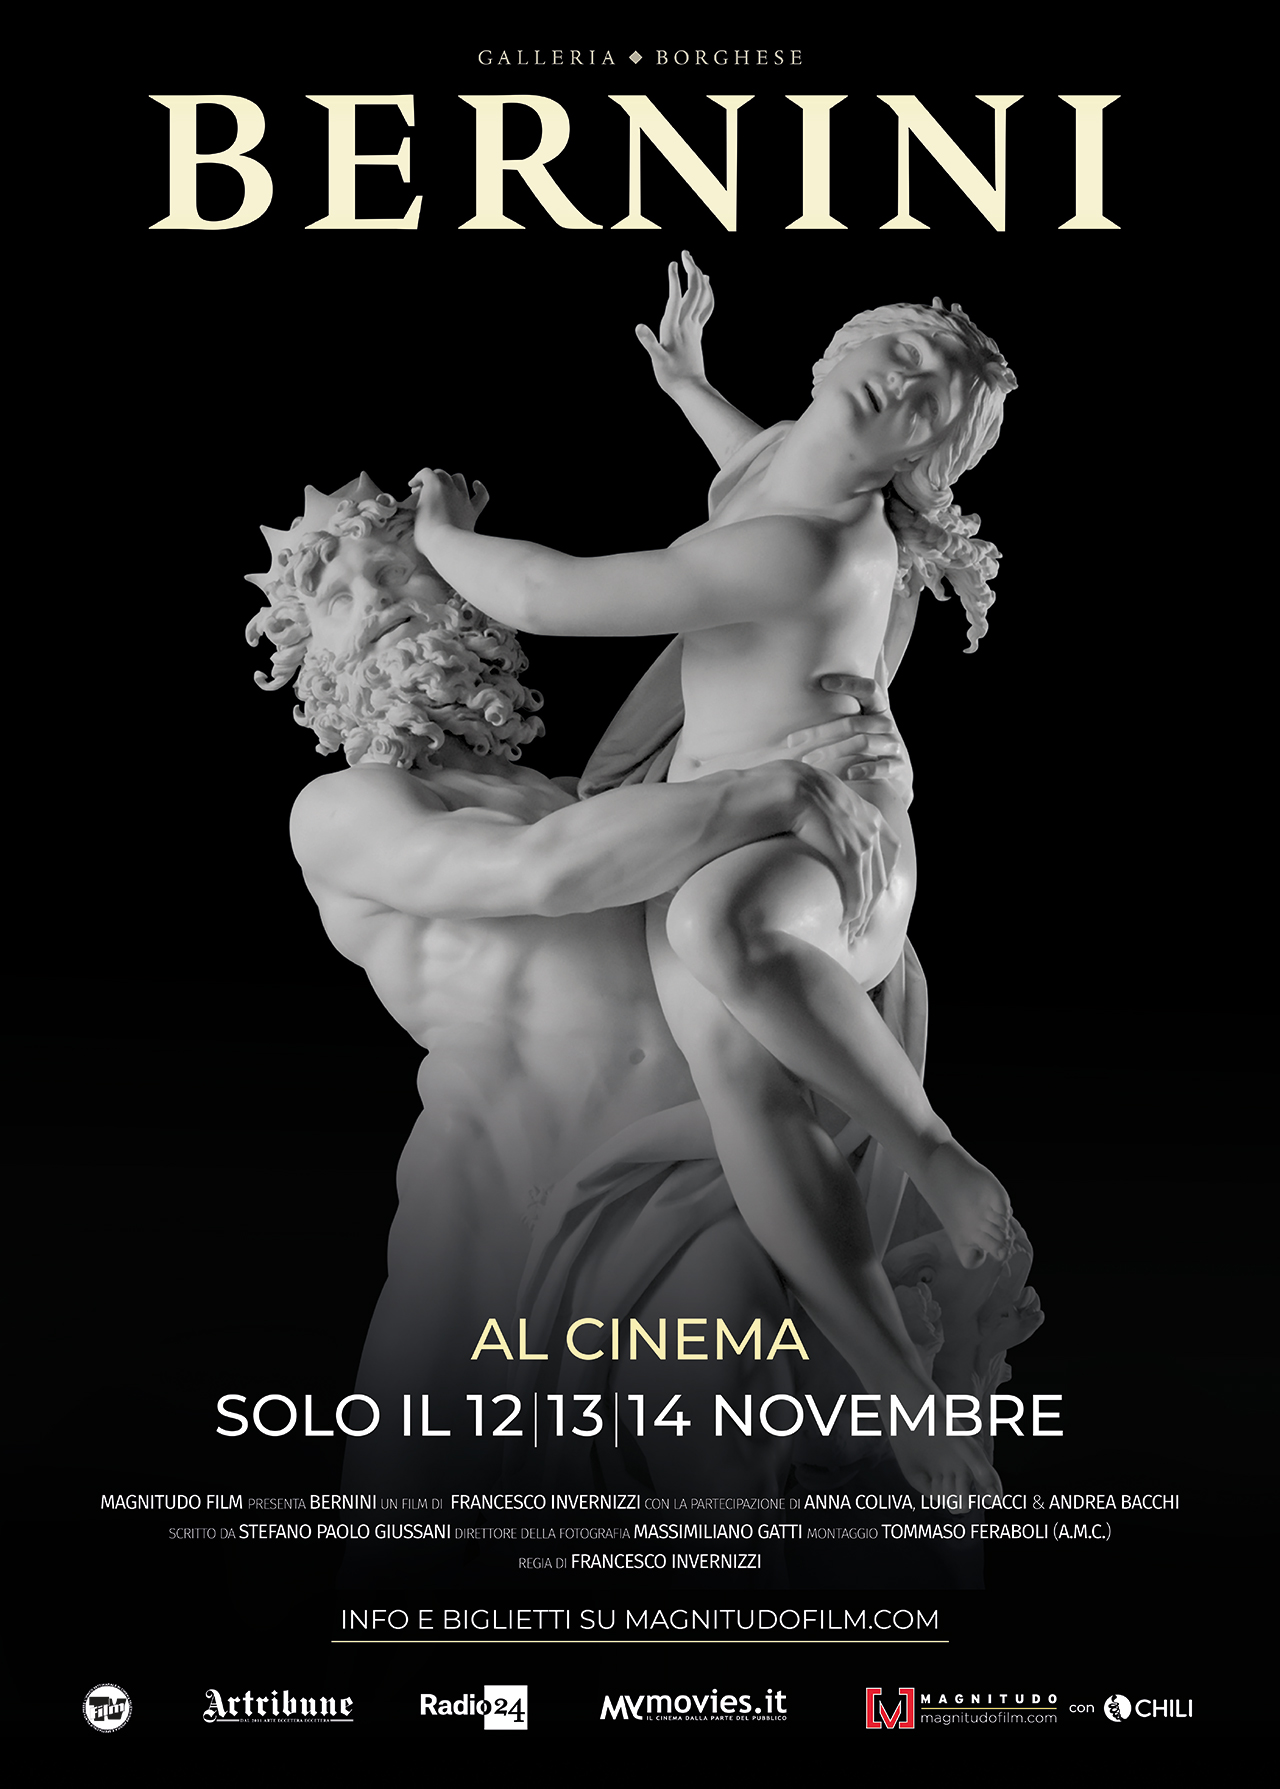  Dall'articolo: Bernini, il poster del film sul maestro dell'arte barocca italiana.